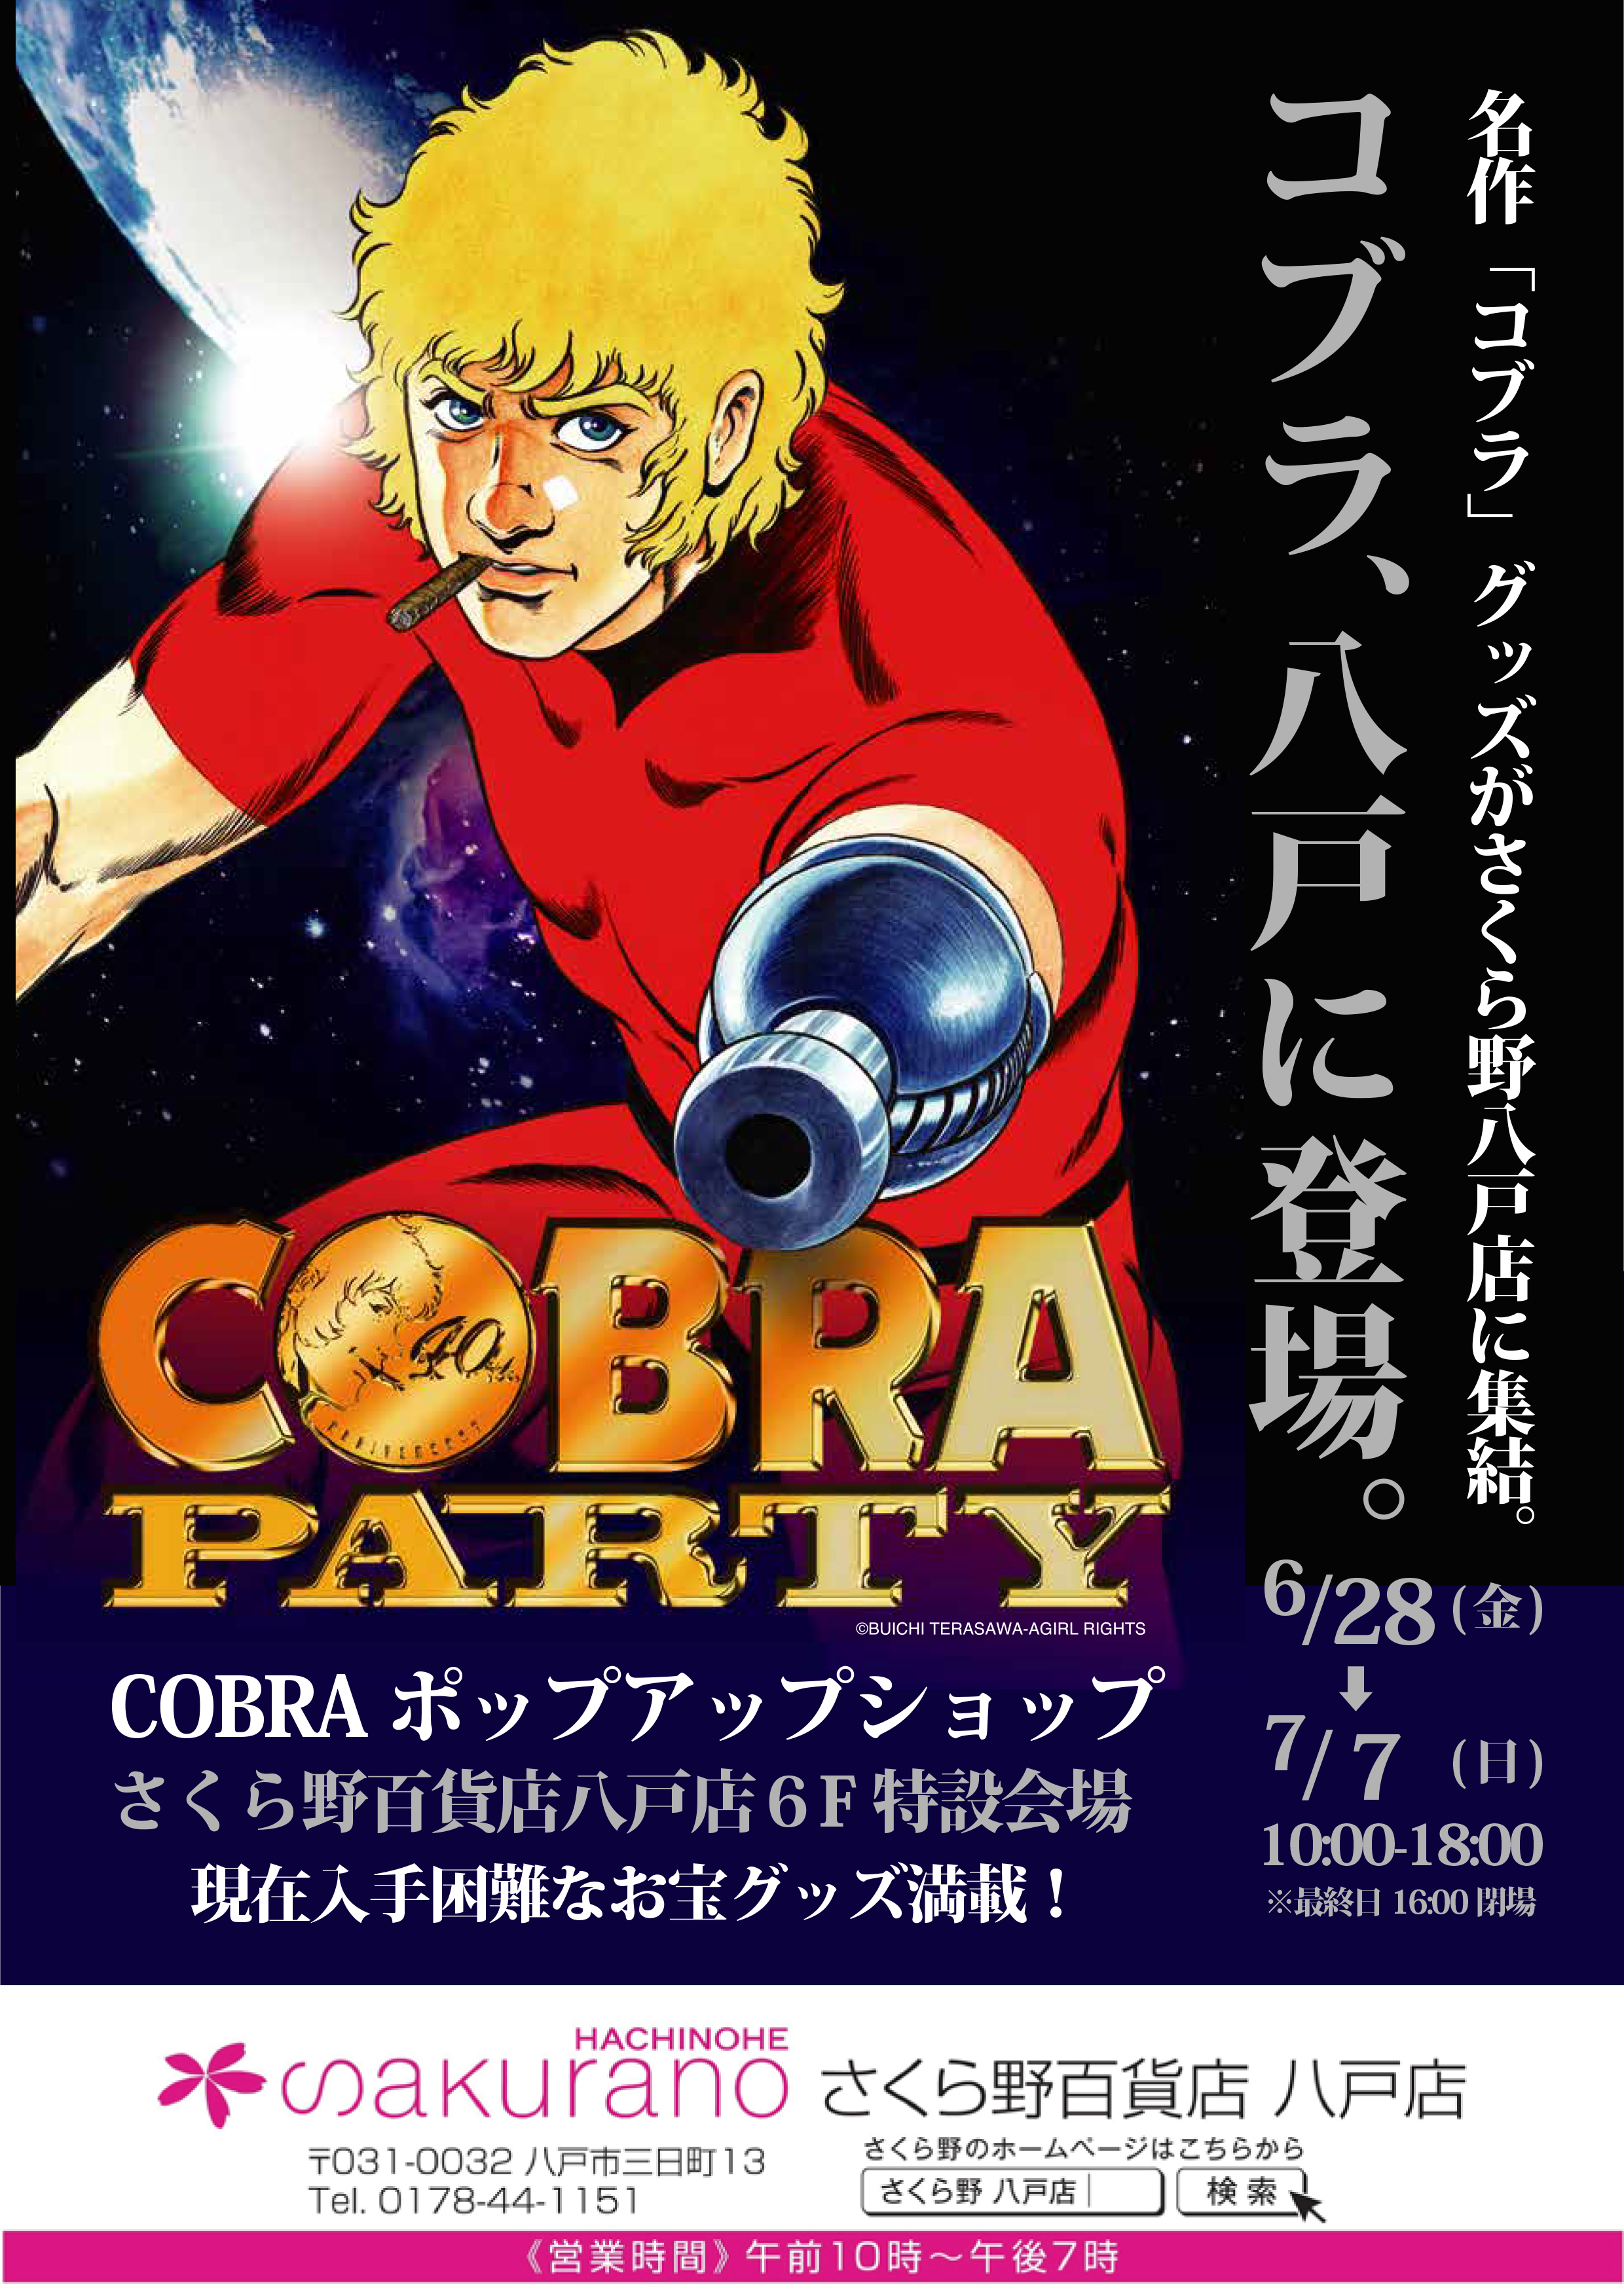 青森出張開催 Cobraポップアップショップ Cobra Party 登場 墓場の画廊